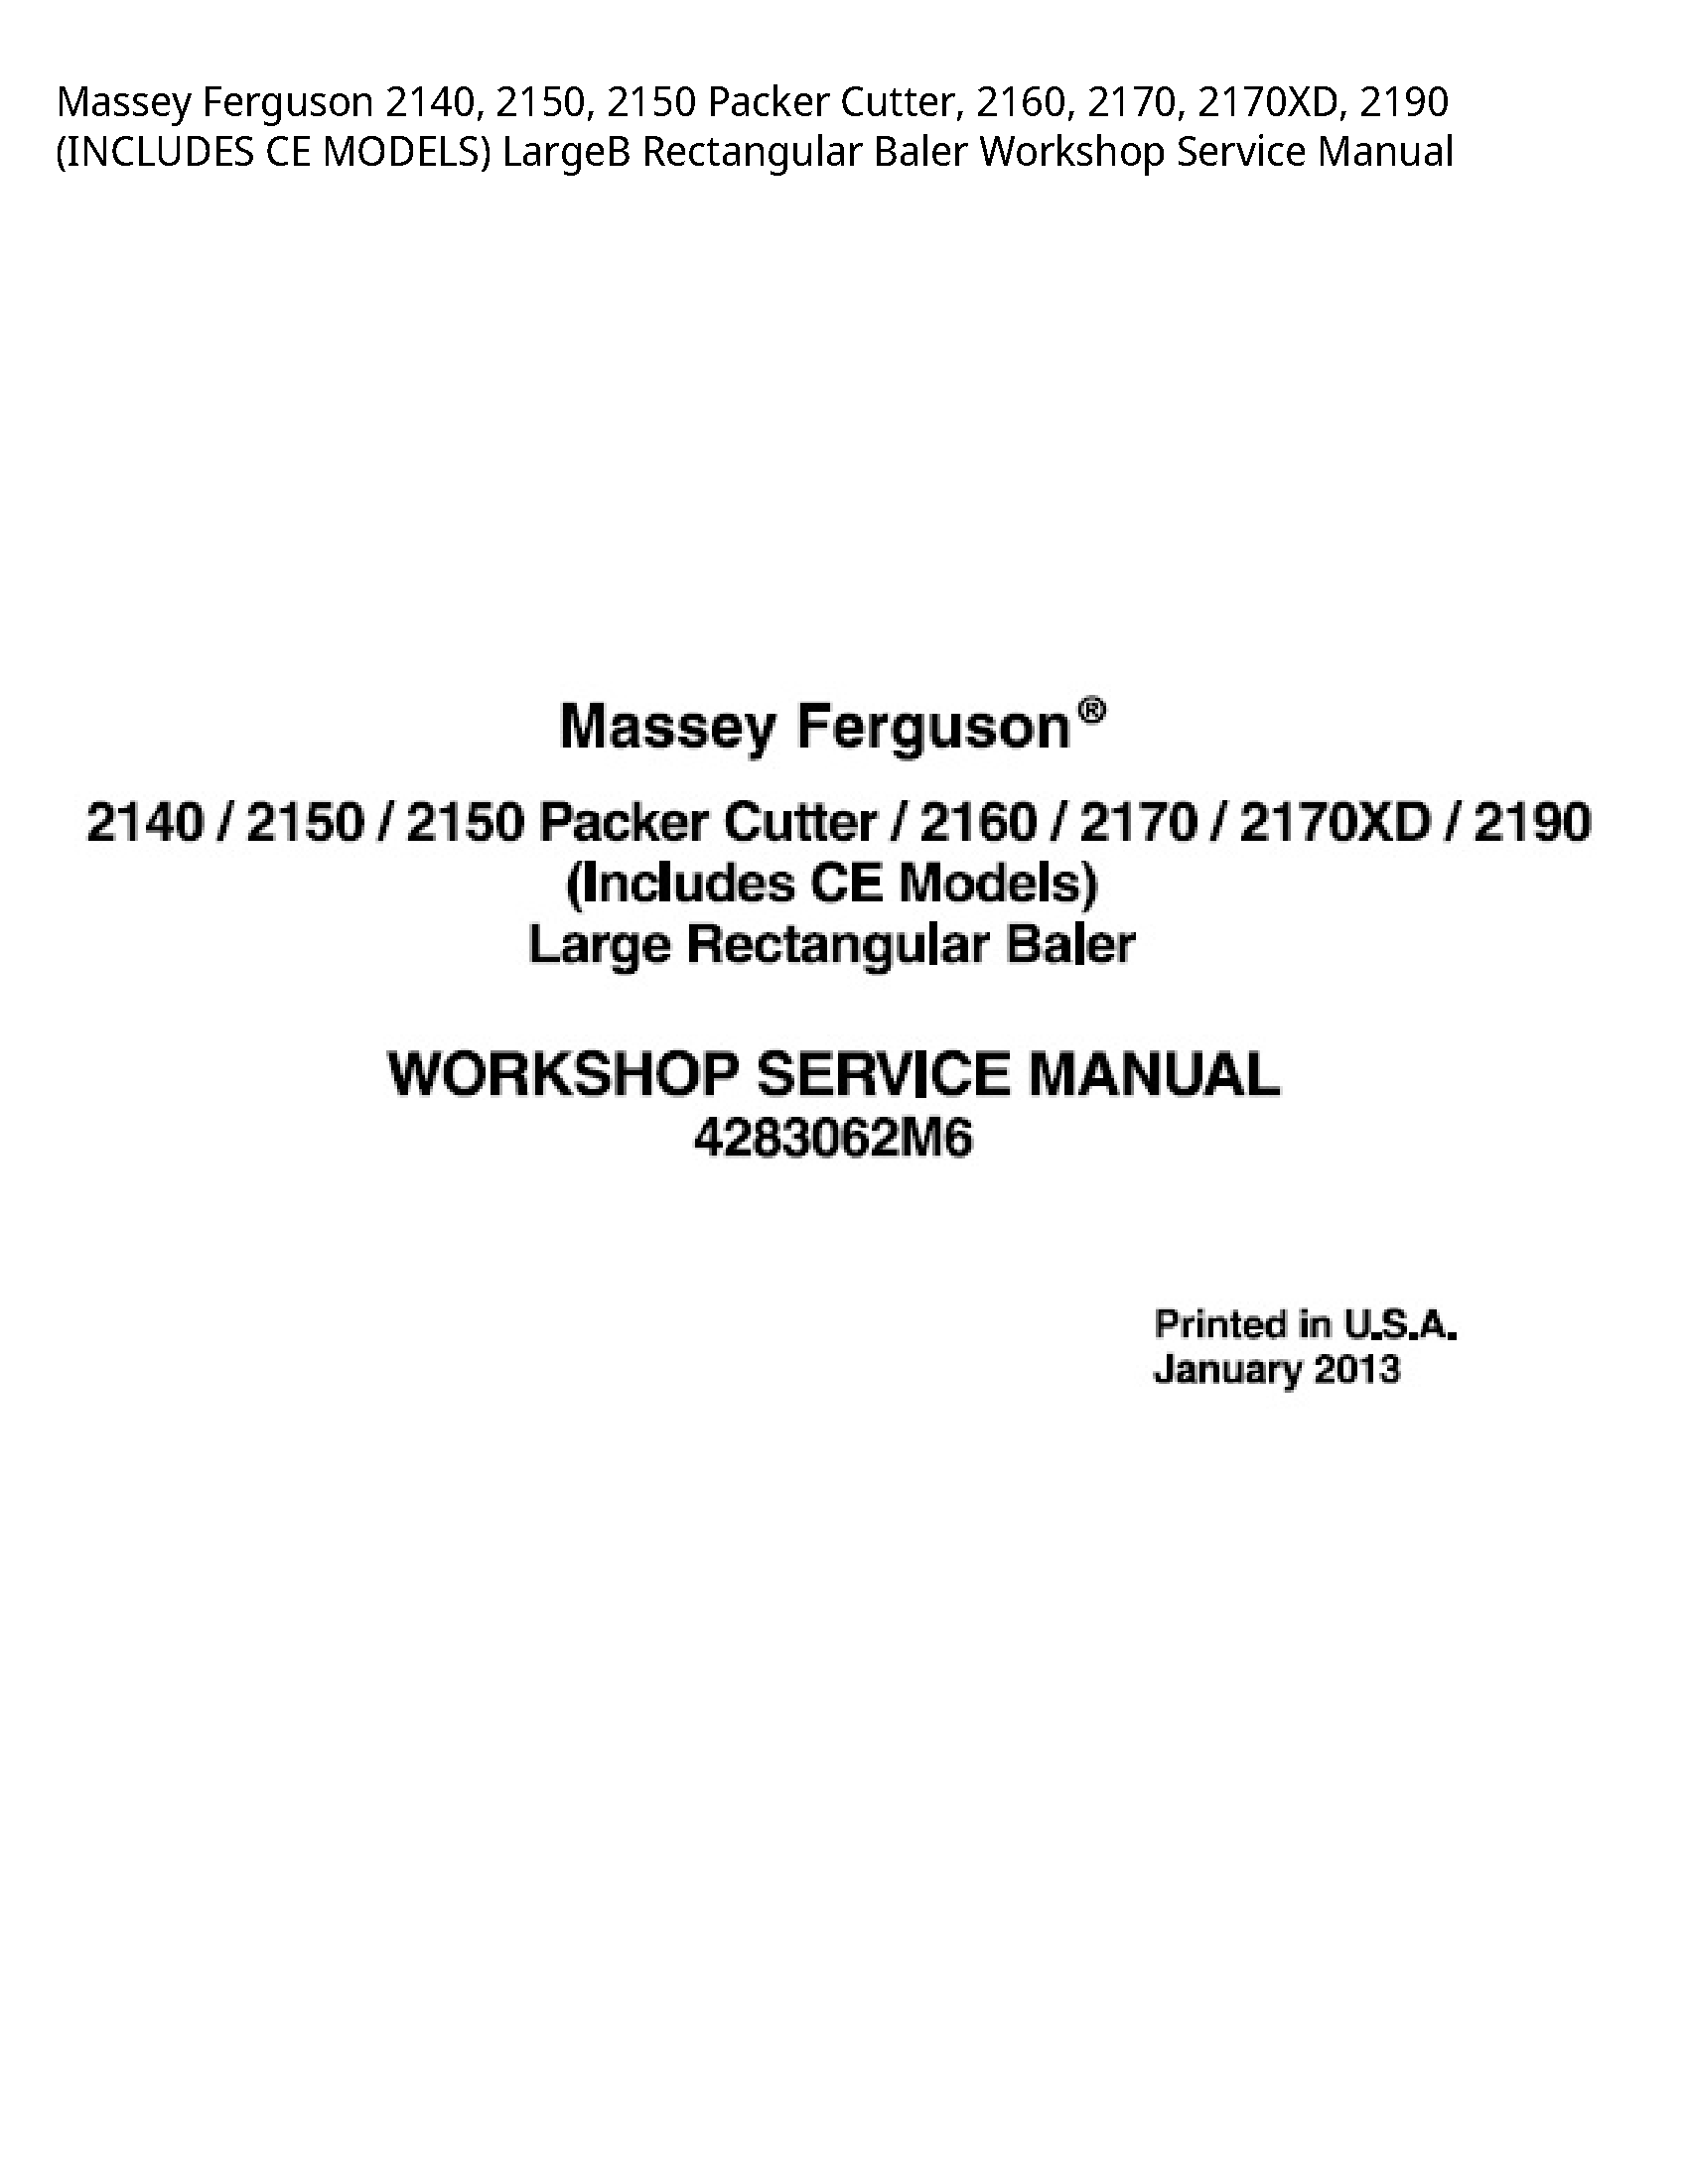 Massey Ferguson 2140 Packer Cutter manual